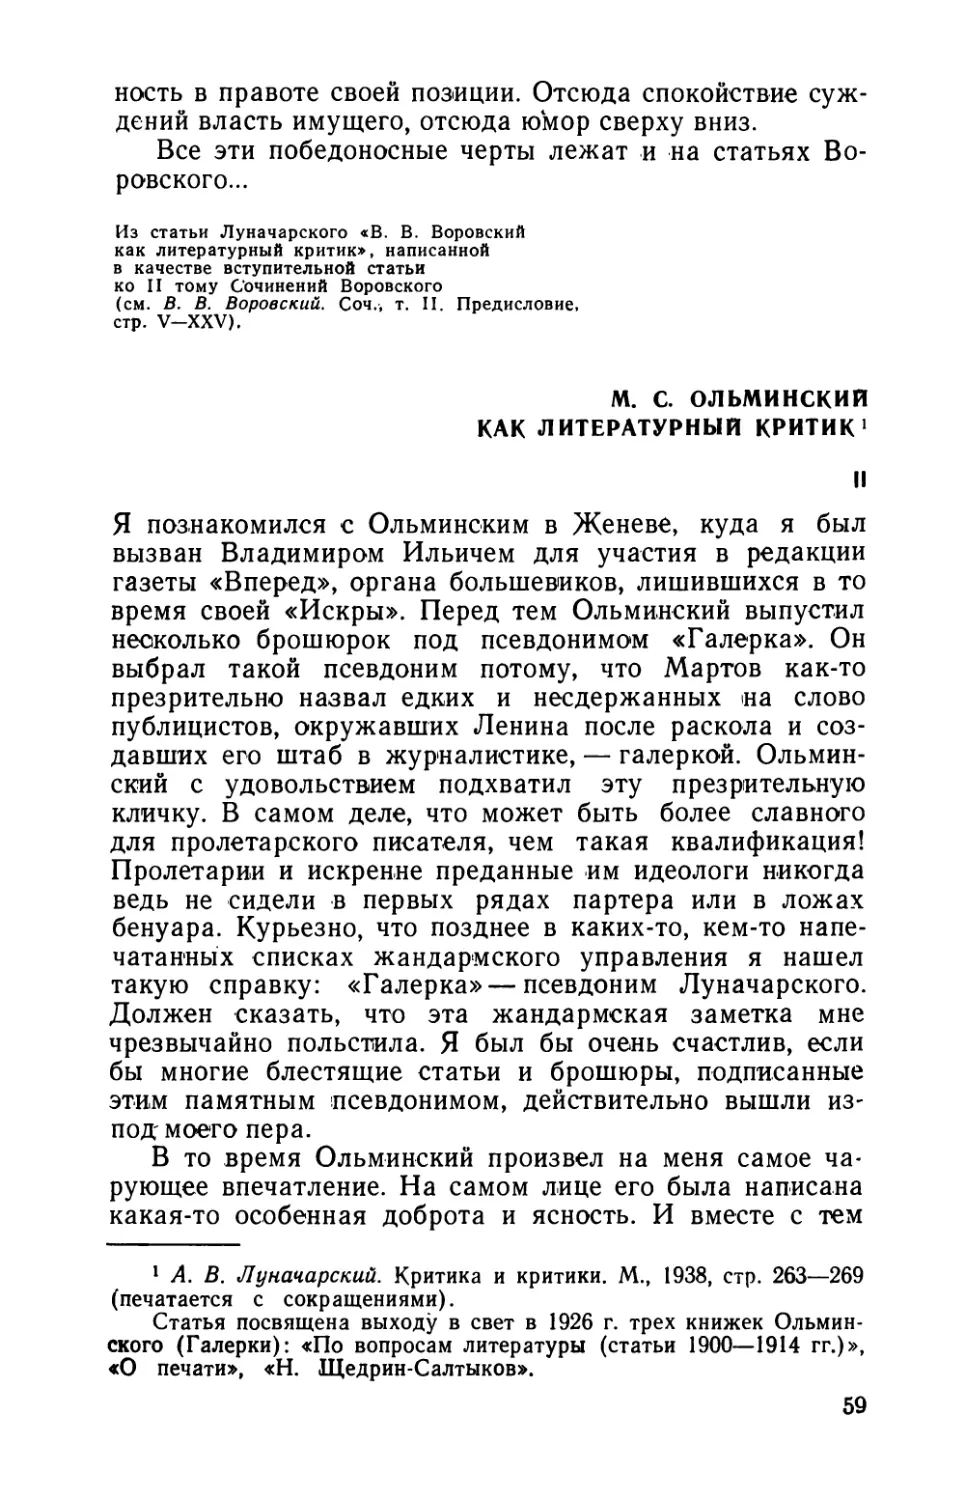 М. С. Ольминский как литературный критик